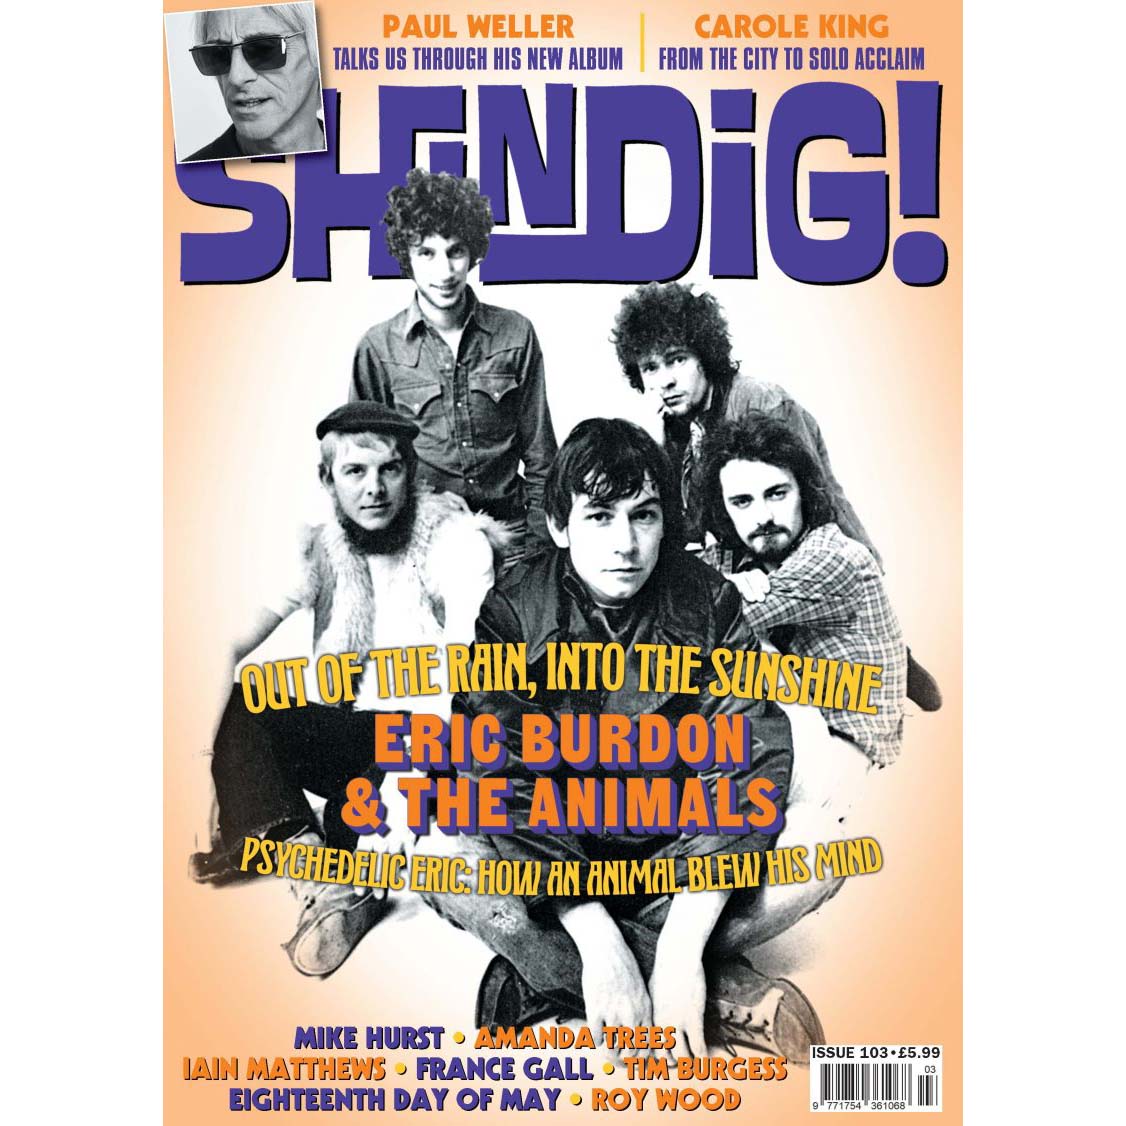 Shindig! Magazine Issue 103 (May 2020) - Eric Burdon & the Animals